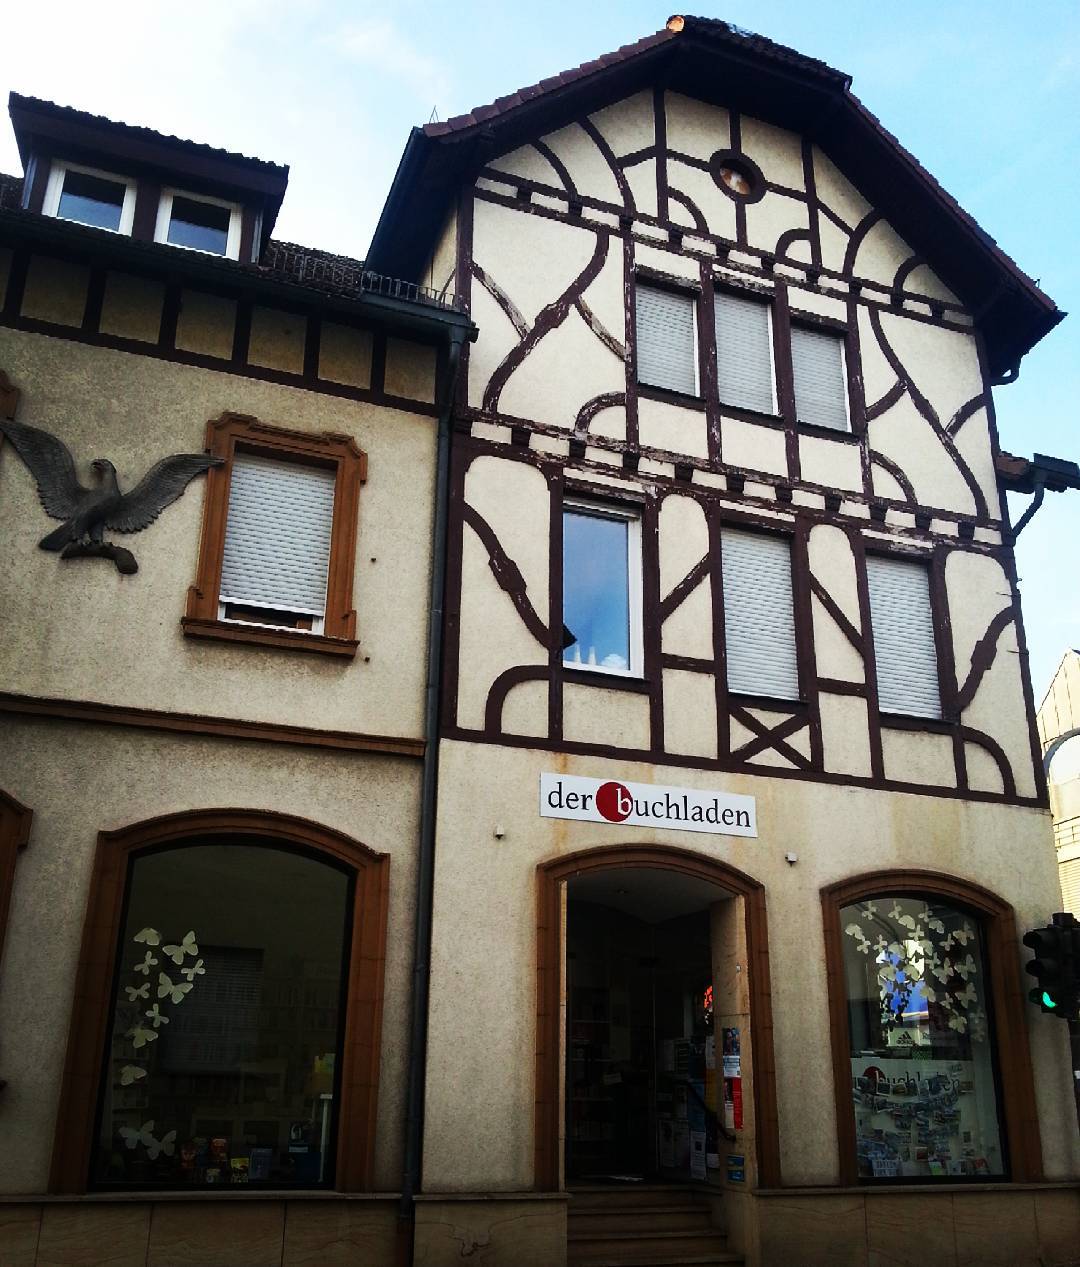 In Seligenstadt liegen Altstadt und Alltag so nah zusammen… @der_buchladen ist nur eins von vielen Geschäften, die sich in einem Haus mit Fachwerk befinden